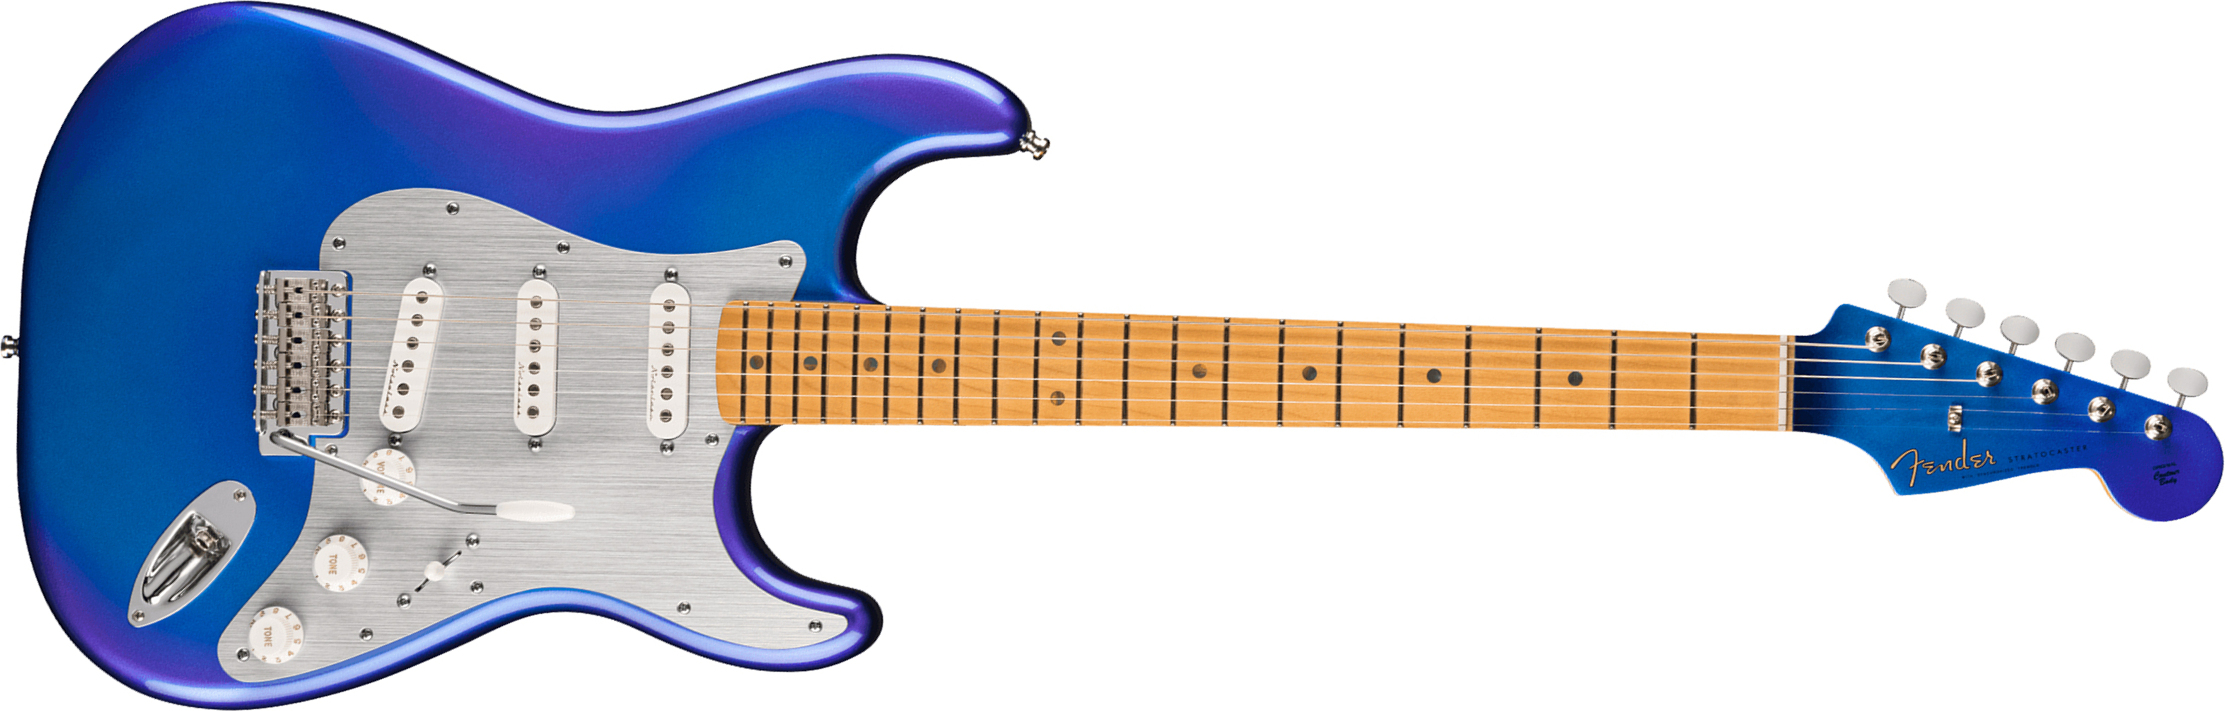 Fender H.e.r. Strat Ltd Signature Mex 3s Trem Mn - Blue Marlin - Guitare Électrique Forme Str - Main picture